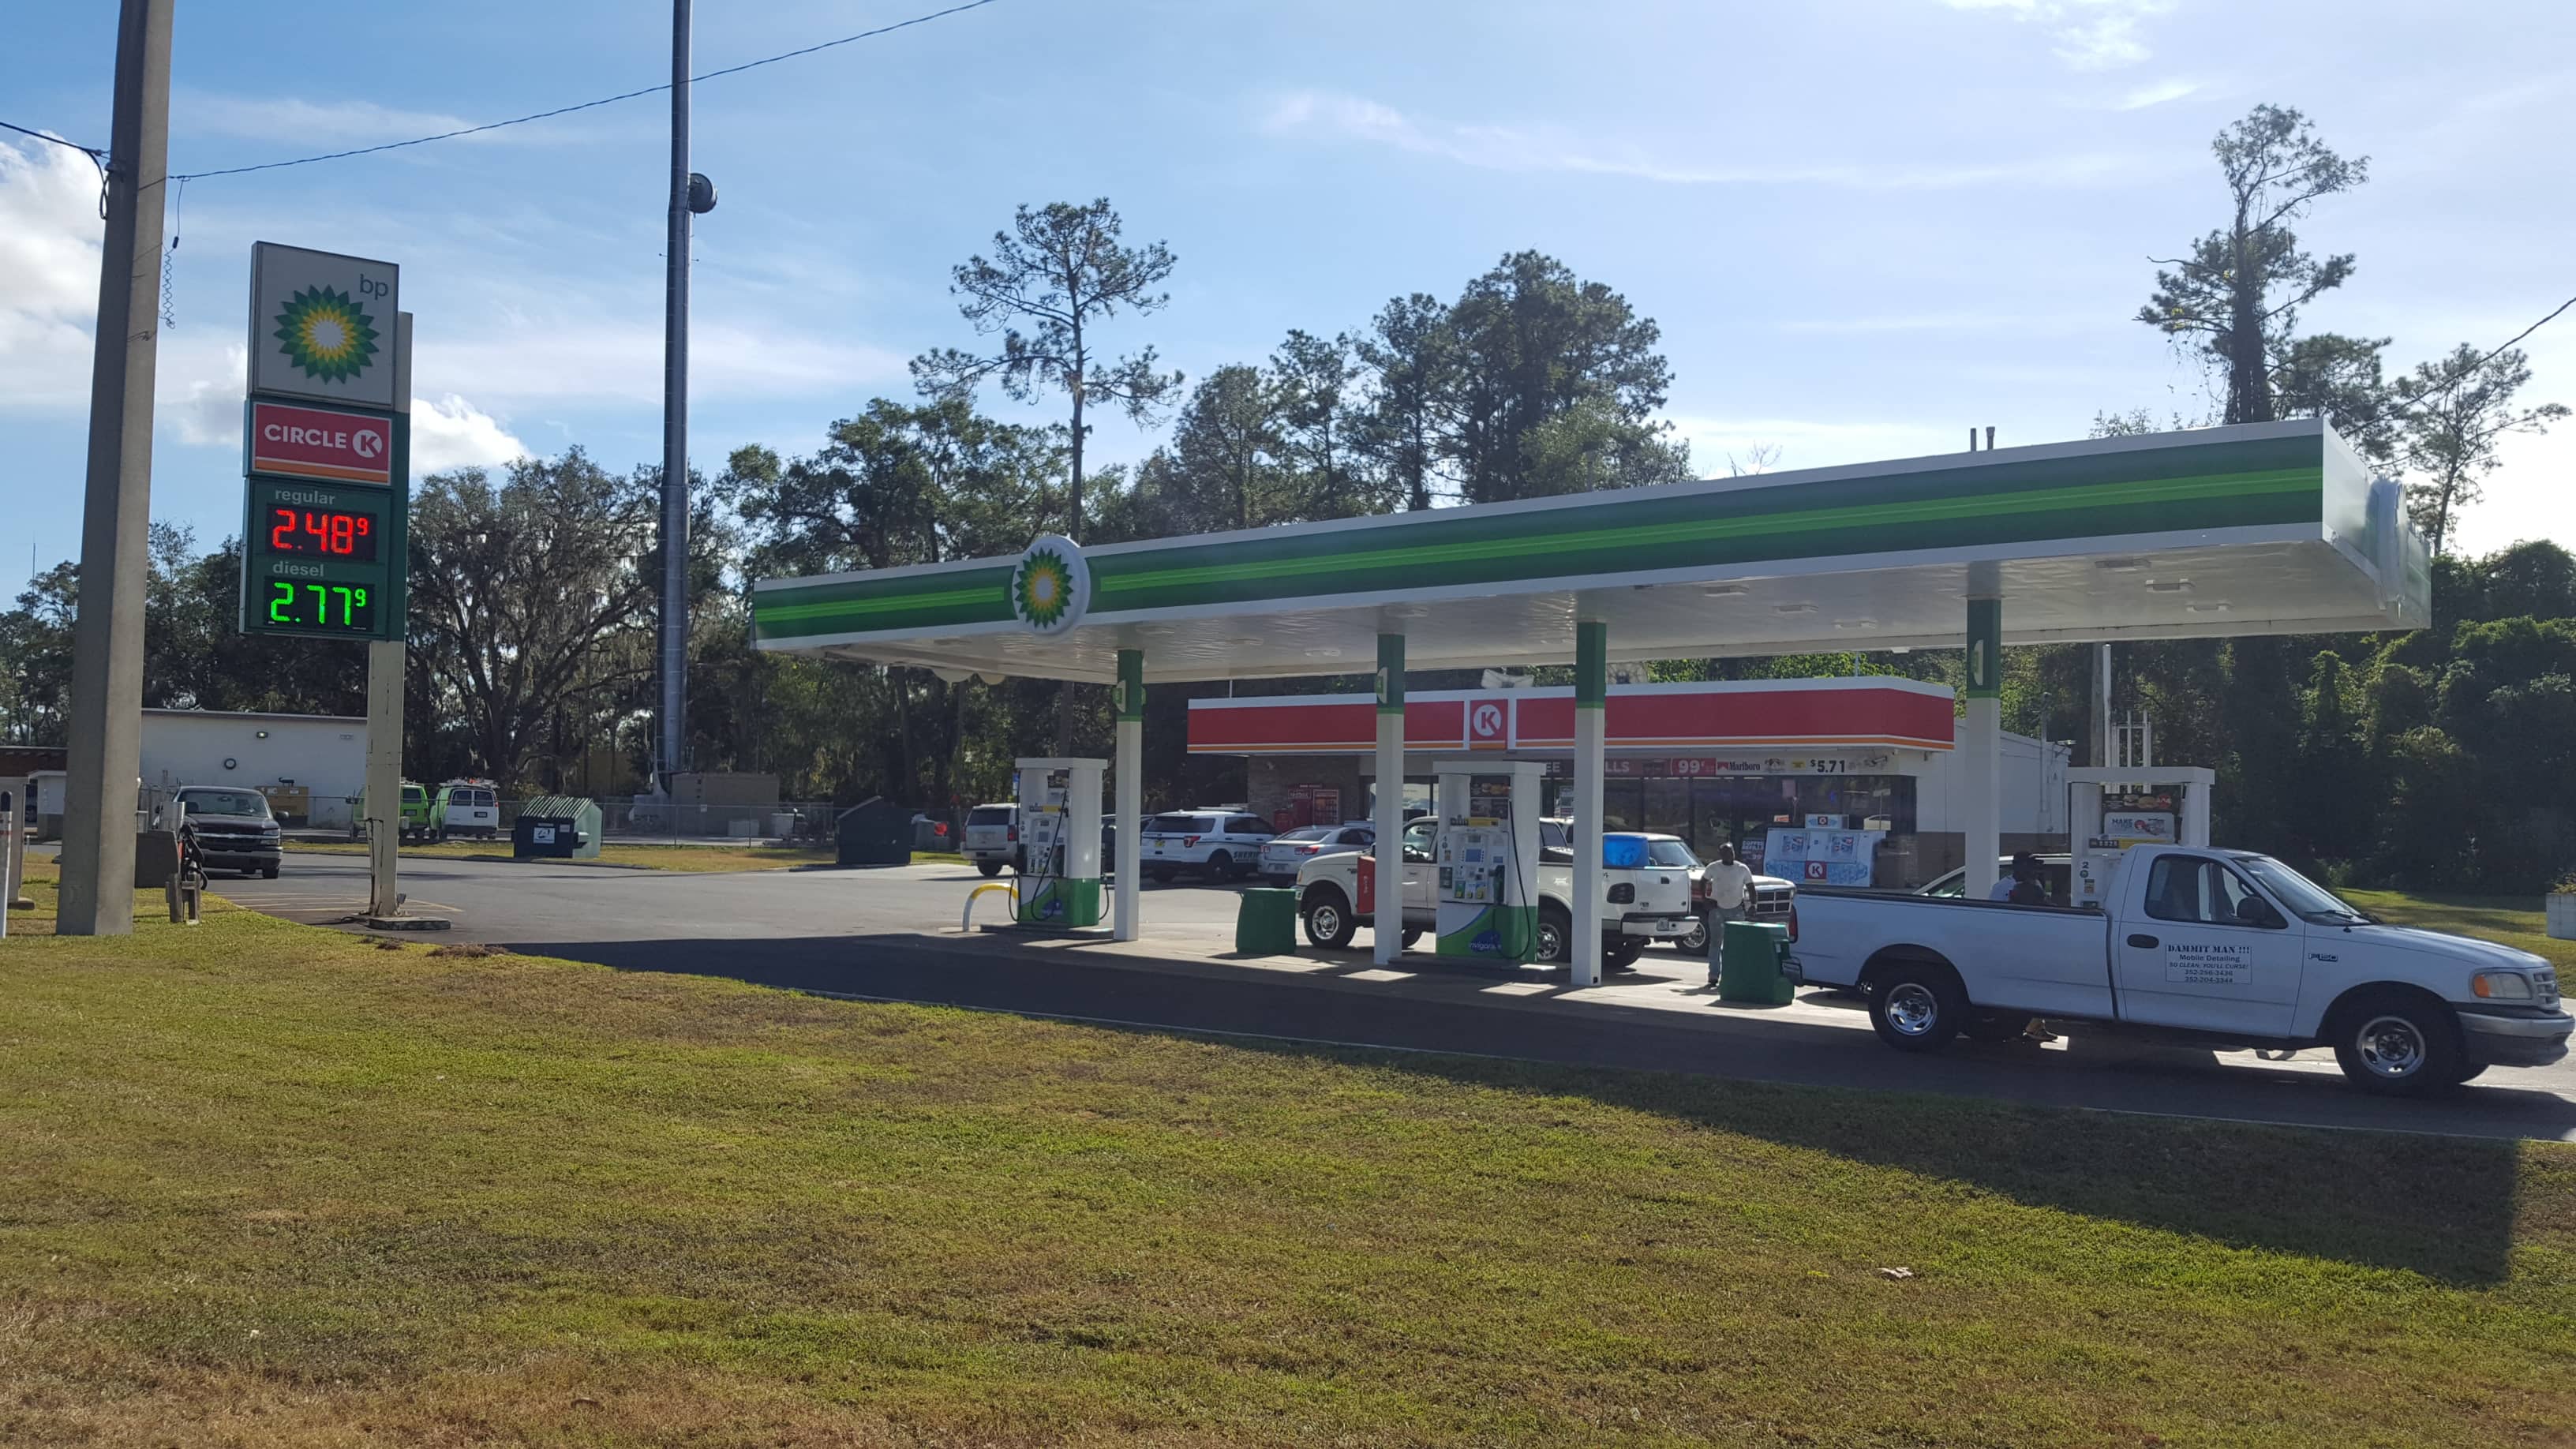 bp - Reddick (FL 32686), US, nearest gas station with car wash